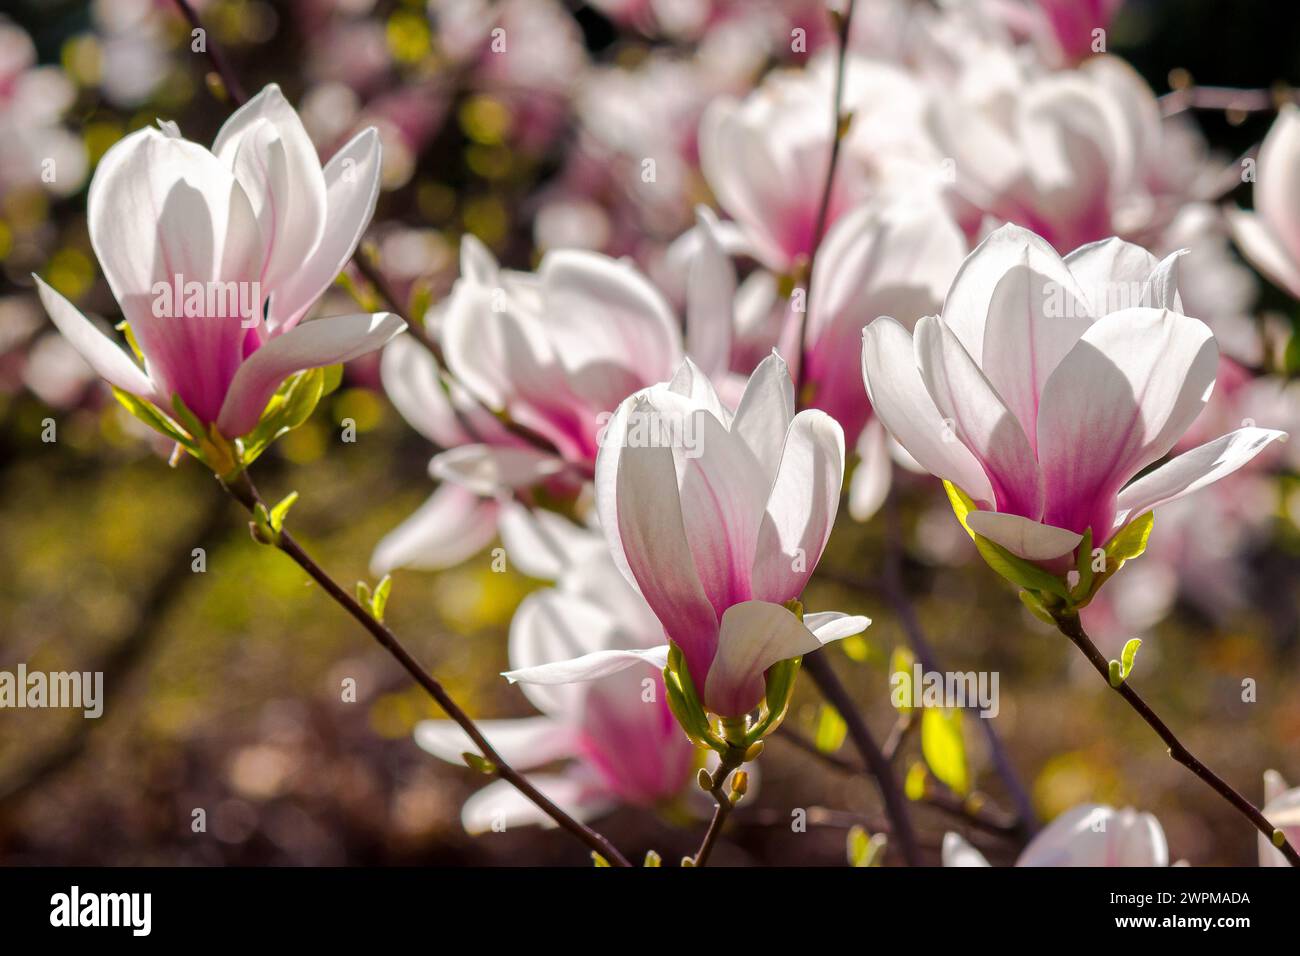 grandes fleurs roses de magnolia soulangeana arbre en fleur. beau fond naturel au printemps Banque D'Images